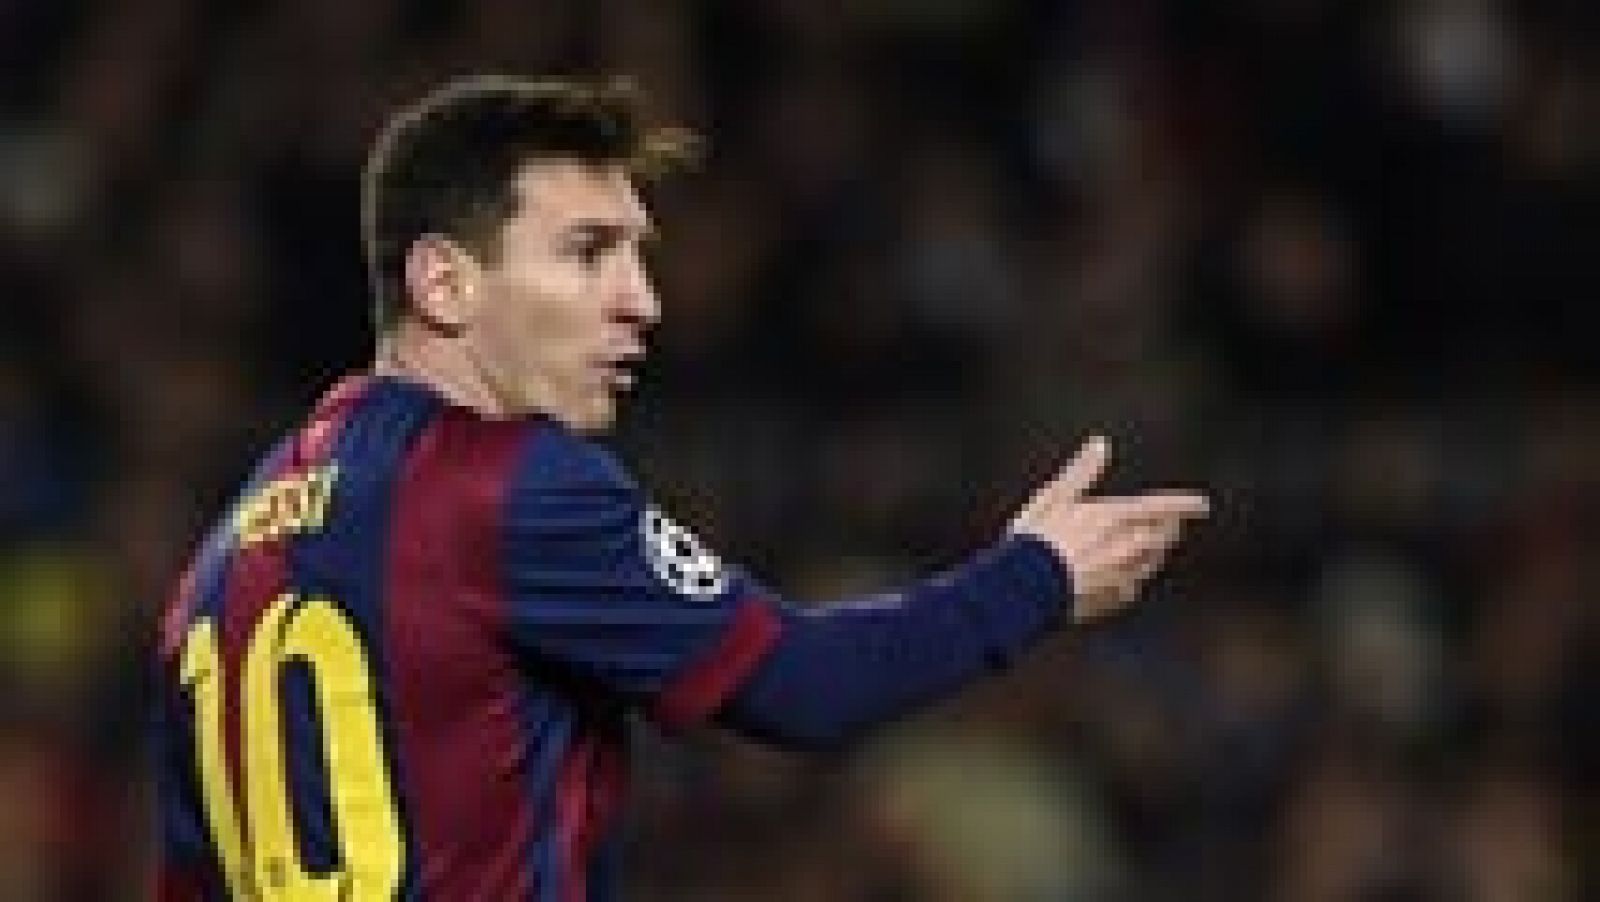 El FC Barcelona se encargó de remontar ante el PSG para pasar a octavos de la Champions como primeros del grupo. Messi, Neymar y Suárez se encargaron de hacer los goles de los azulgranas.